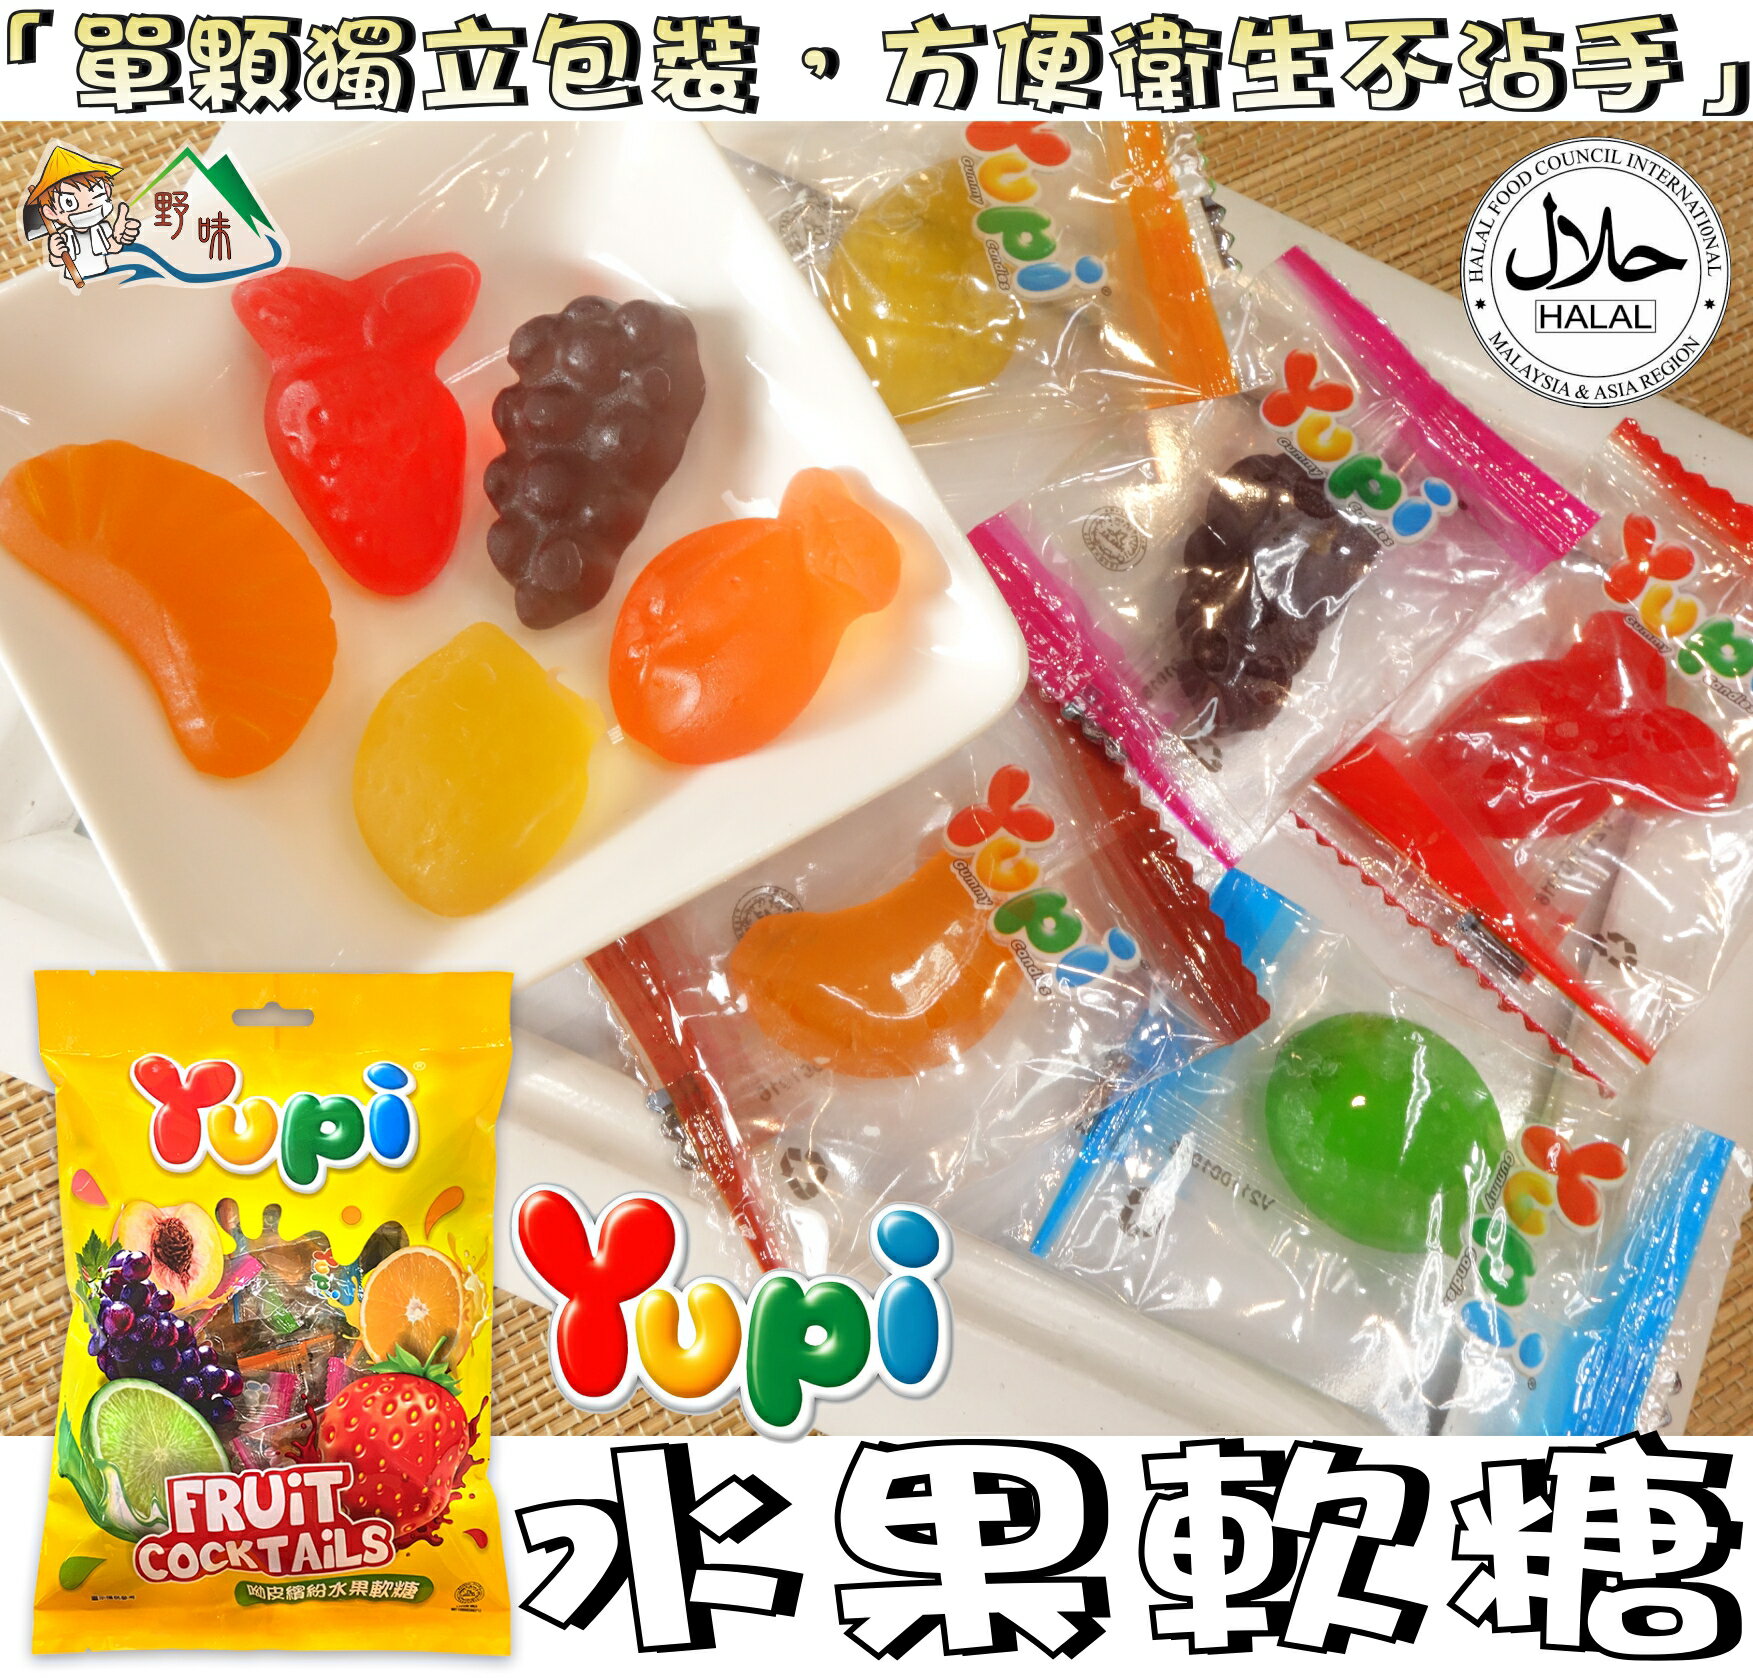 【野味食品】Yupi 呦皮 繽紛水果軟糖,250g/包(桃園實體店面出貨)#水果QQ#水果軟糖#橡皮糖#漢堡軟糖